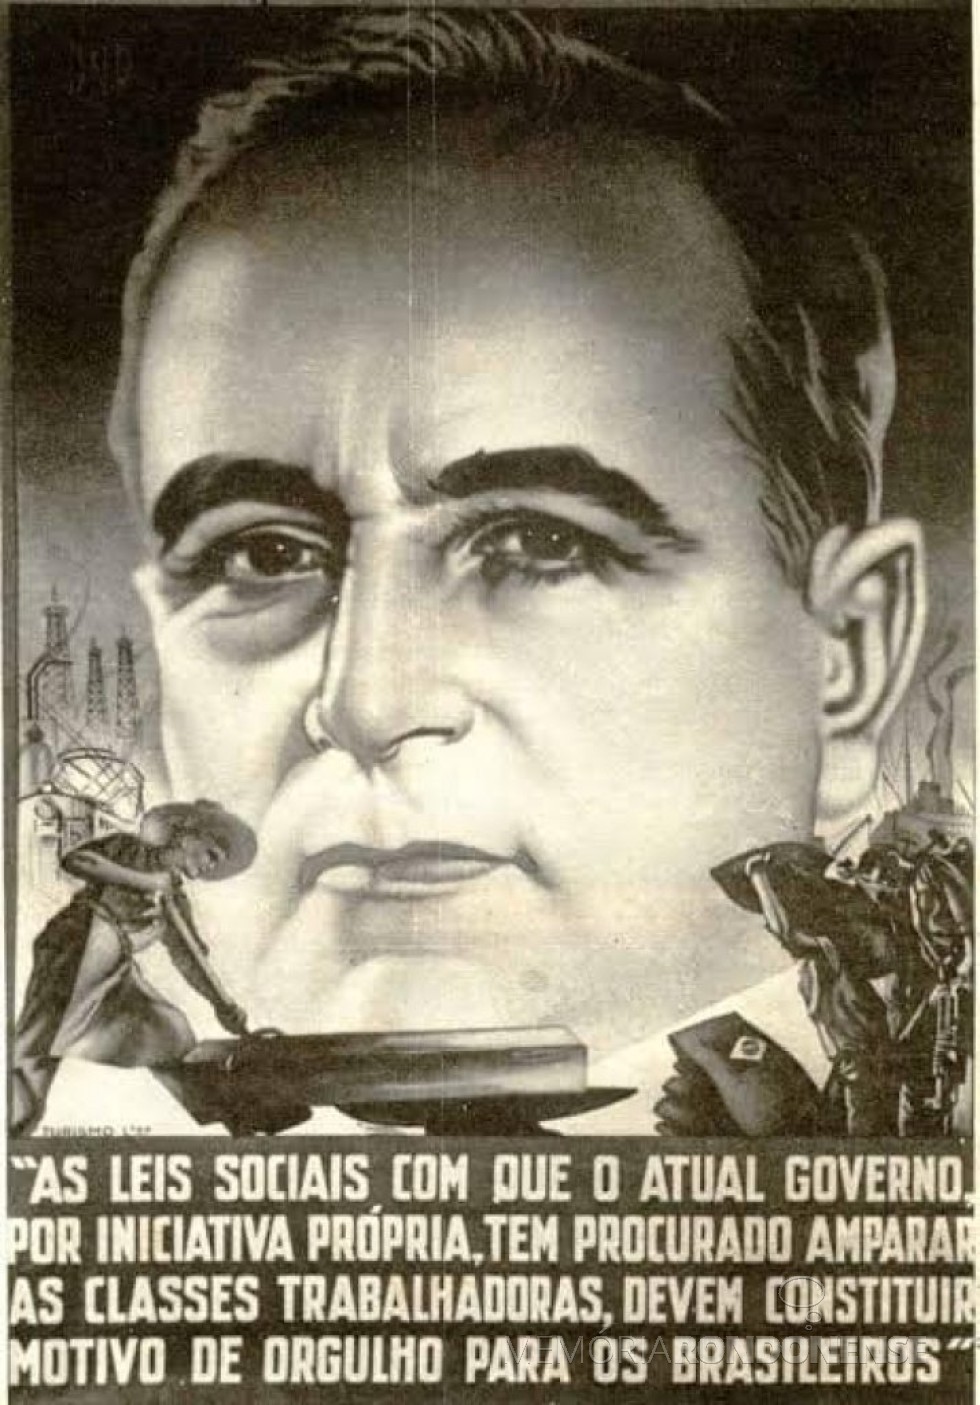 || Cartaz ufanista de Getúlio Vargas espalhado pelo País em vista a assinatura da CLT, em maio de 1934.
Imagem: Acervo Arquivo Nacional - FOTO 6 - 